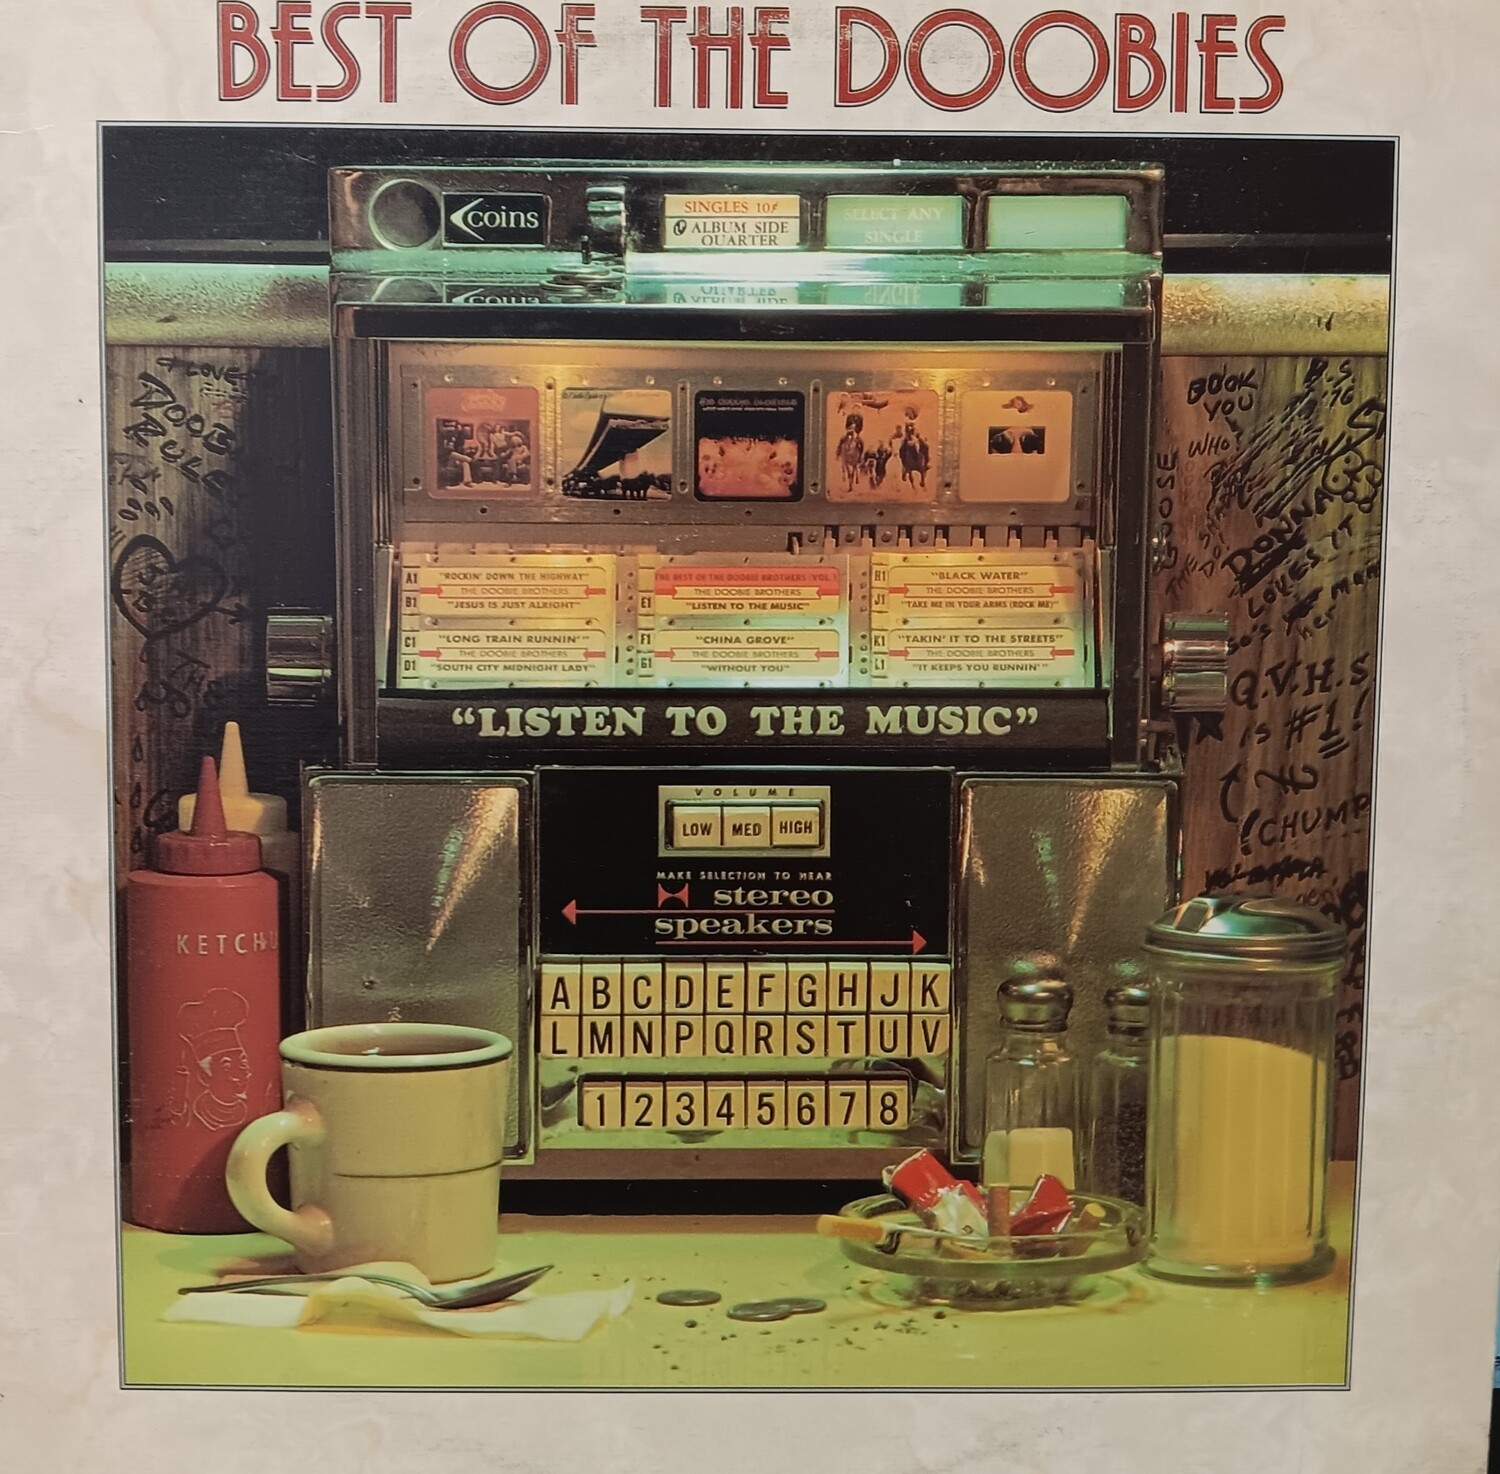 THE DOOBIE BROTHERS - Best of The Doobies